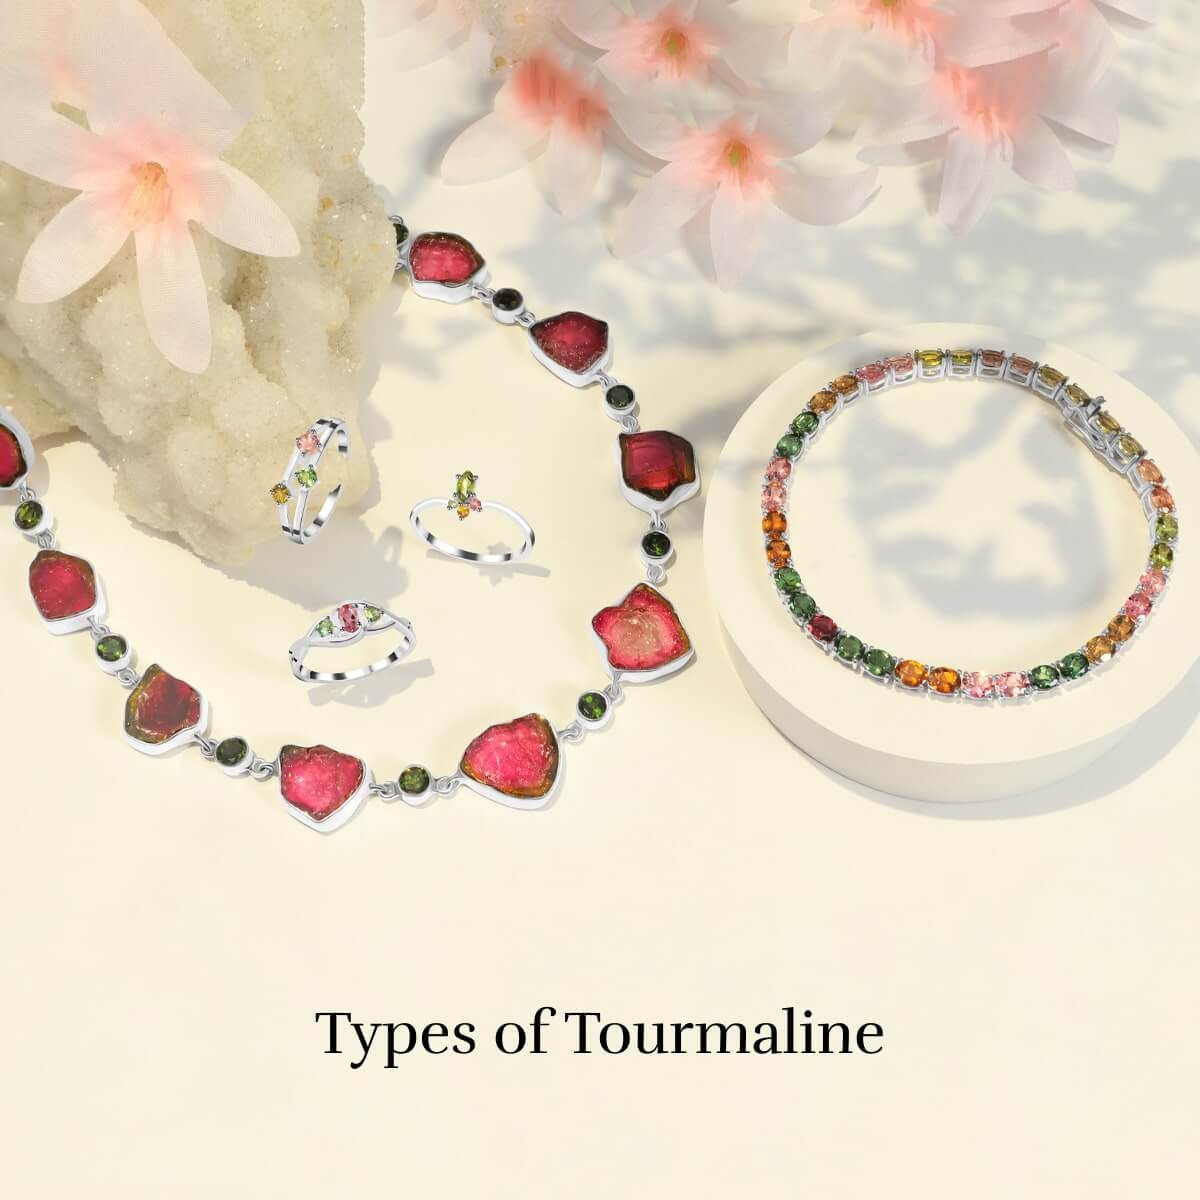 Varieties of Tourmaline